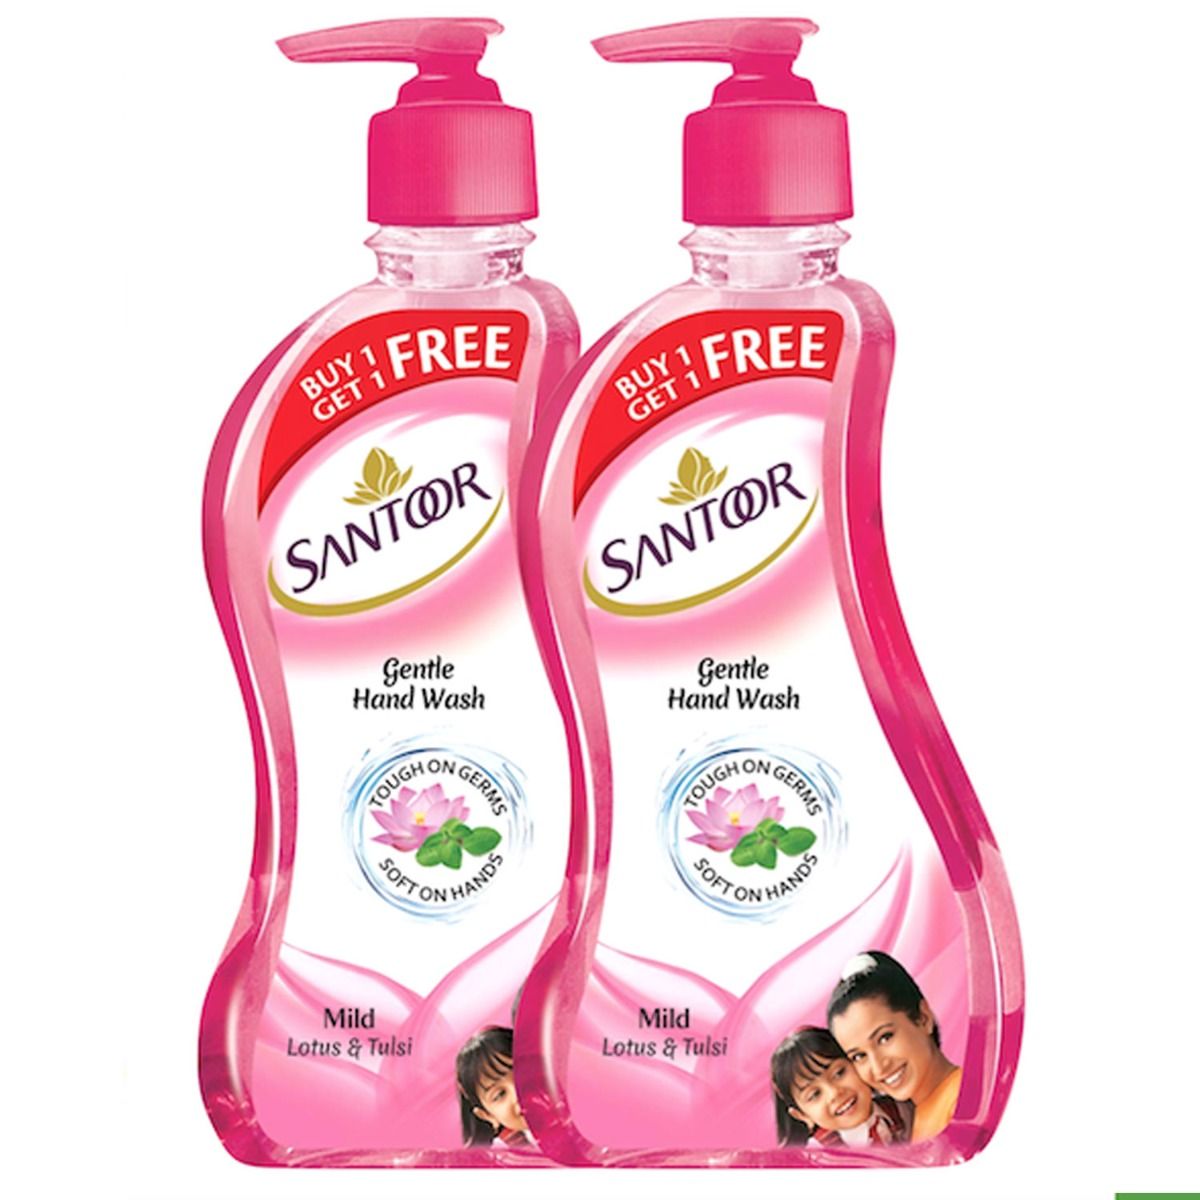 Buy Santoor Gentle Mild Lotus & Tulsi Handwash, 215 ml Pump Bottle (Buy 1, Get 1 Free) Online